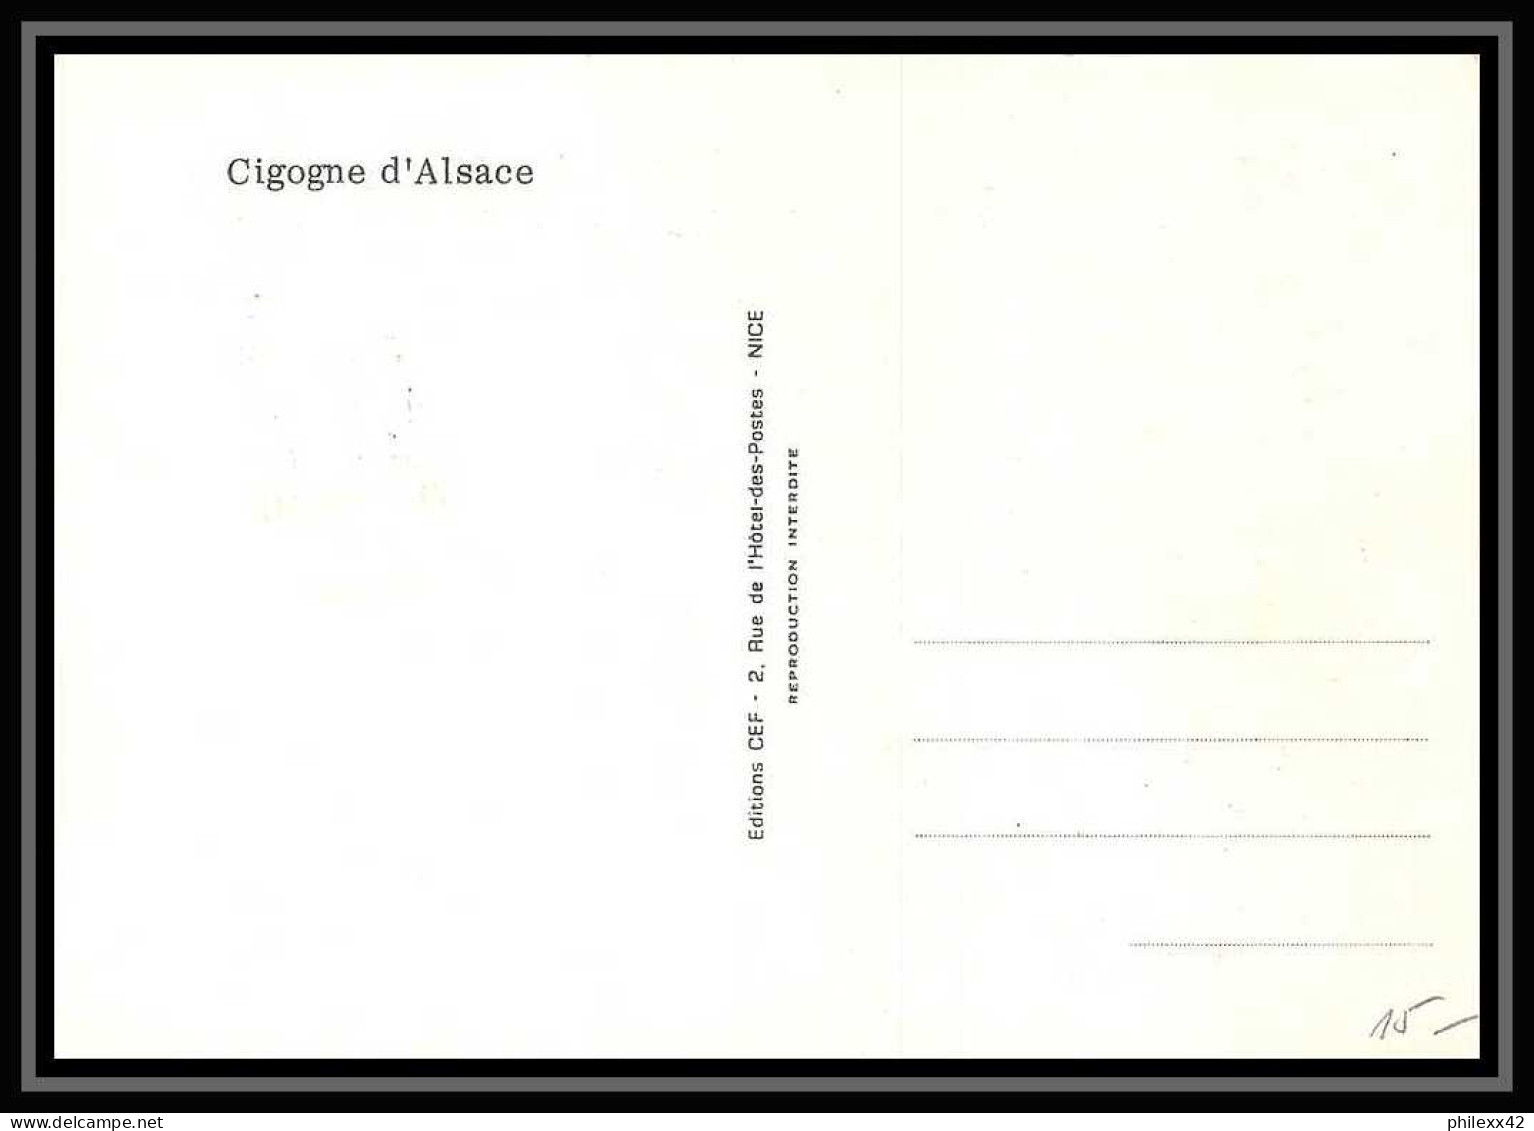 2825/ Carte Maximum (card) France N°1755 Cigogne Stork. D'Alsace Oiseaux (birds) Edition Cef Fdc 1973 Premier Jour - Cigognes & échassiers